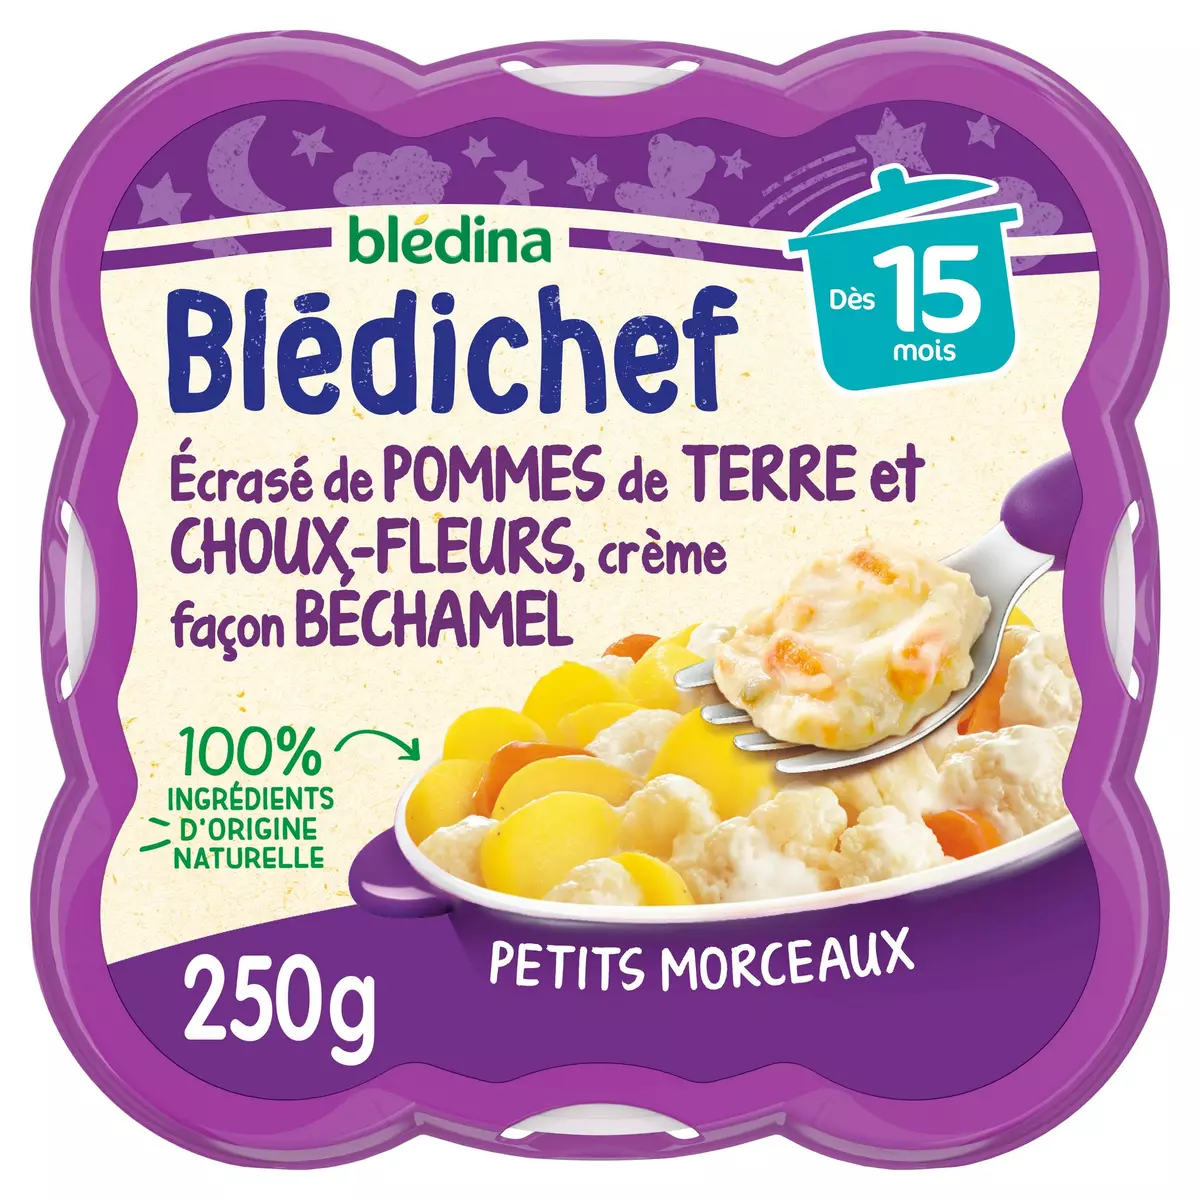 BLEDINA Blédichef assiette pommes de terre choux fleurs béchamel dès 15 mois 250g